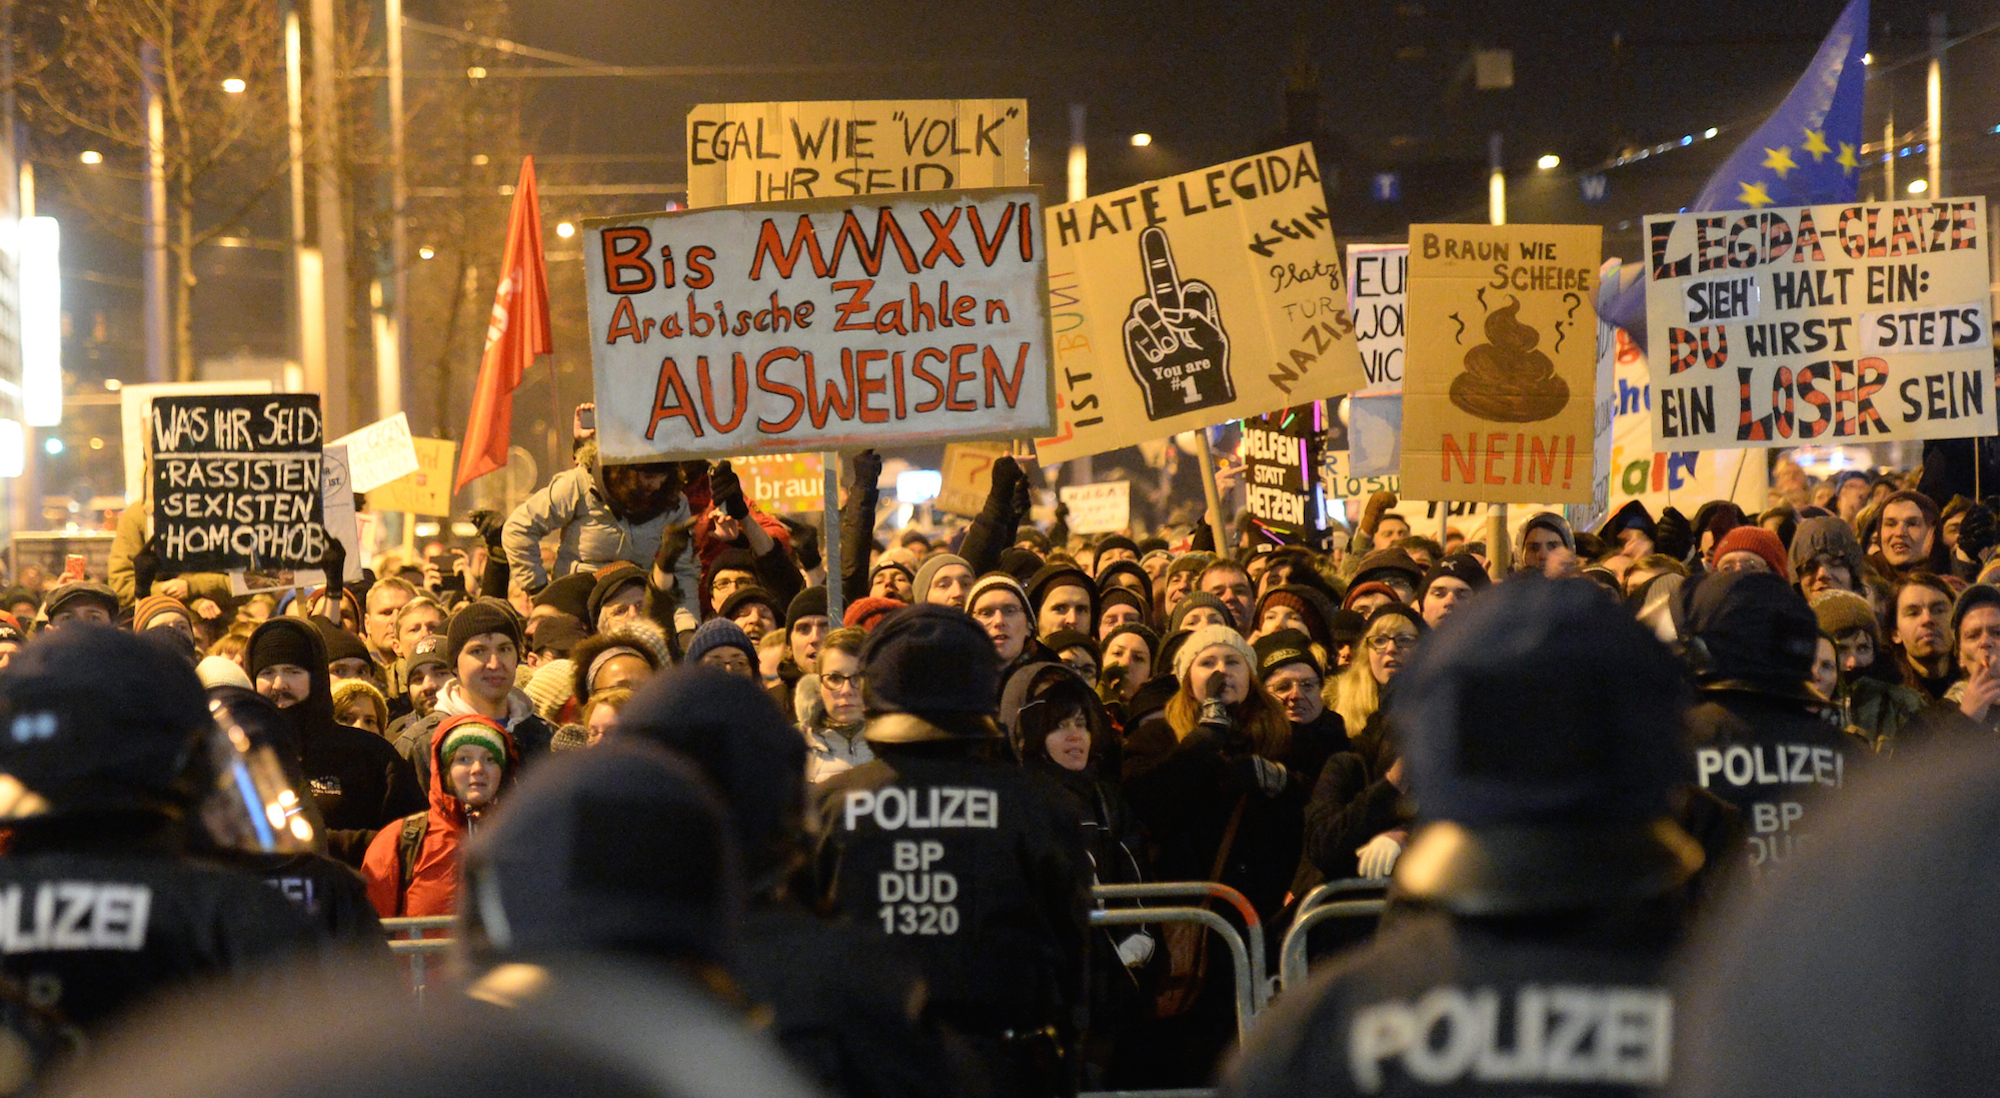 Foto: Protest gegen die rassistische Legida-Bewegung in Leipzig